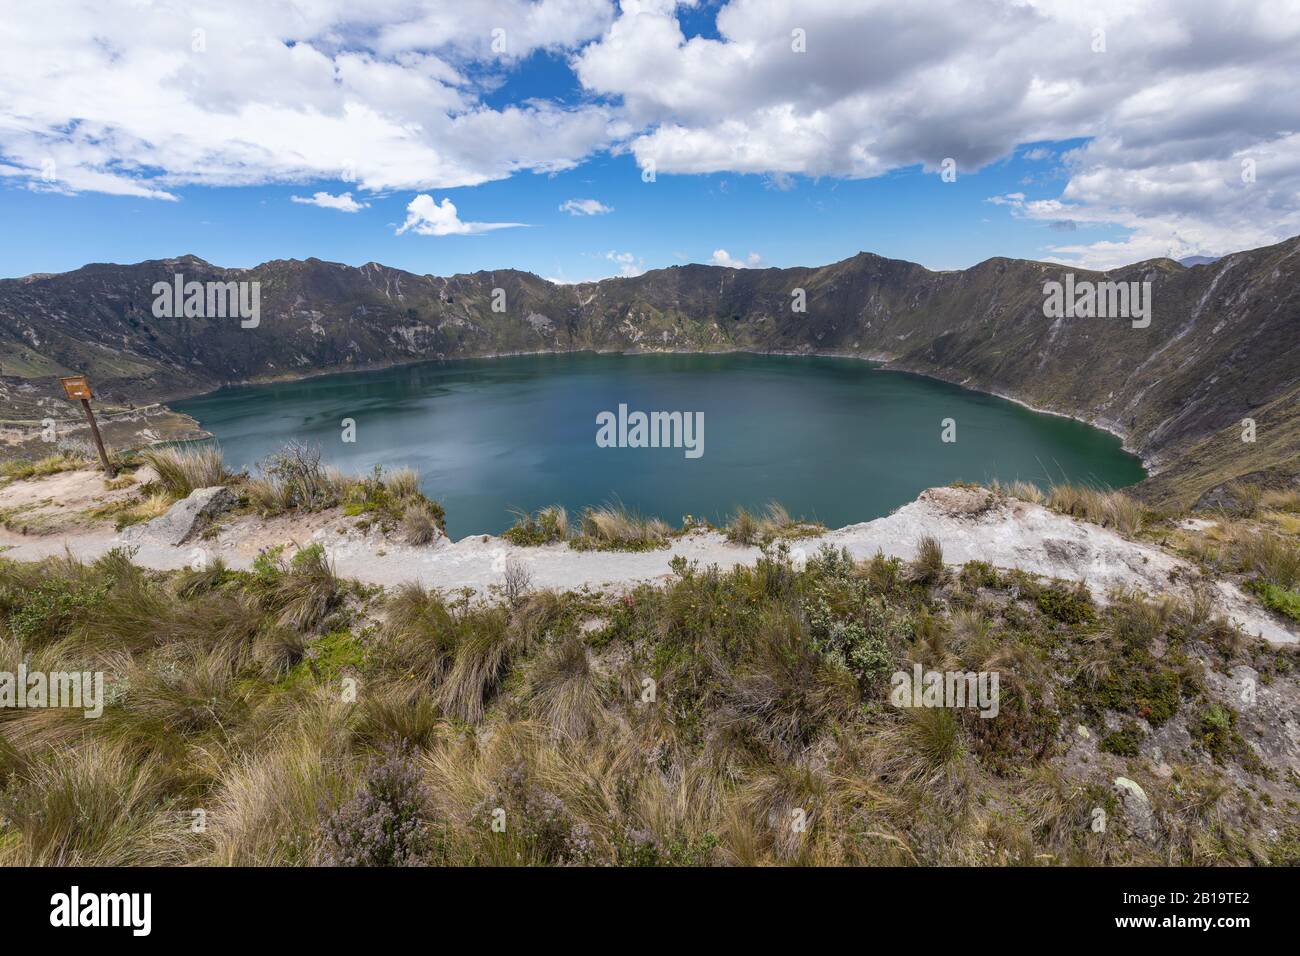 Lago Quilotoa. Panorama della laguna del cratere del vulcano turchese di Quilotoa, vicino Quito, regione andina dell'Ecuador. Foto Stock